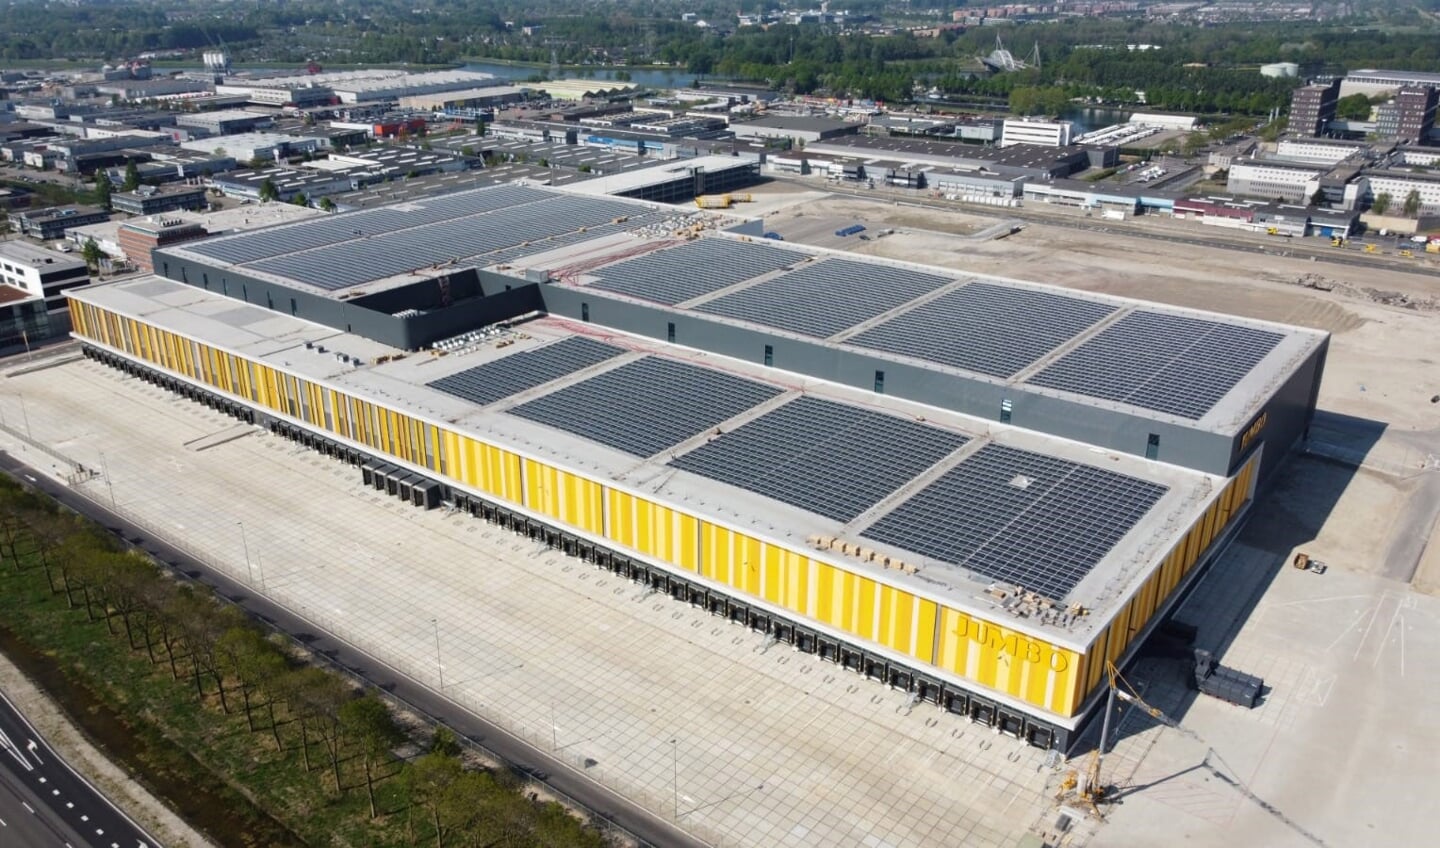 Op het dak van het nationaal distributiecentrum van Jumbo te Nieuwegein liggen zo’n 13.500 zonnepanelen. Samen leveren ze 4,4 megawatt aan energie op, vergelijkbaar met energie voor ruim 1.200 huishoudens. De energie wordt terug geleverd aan het NDC.